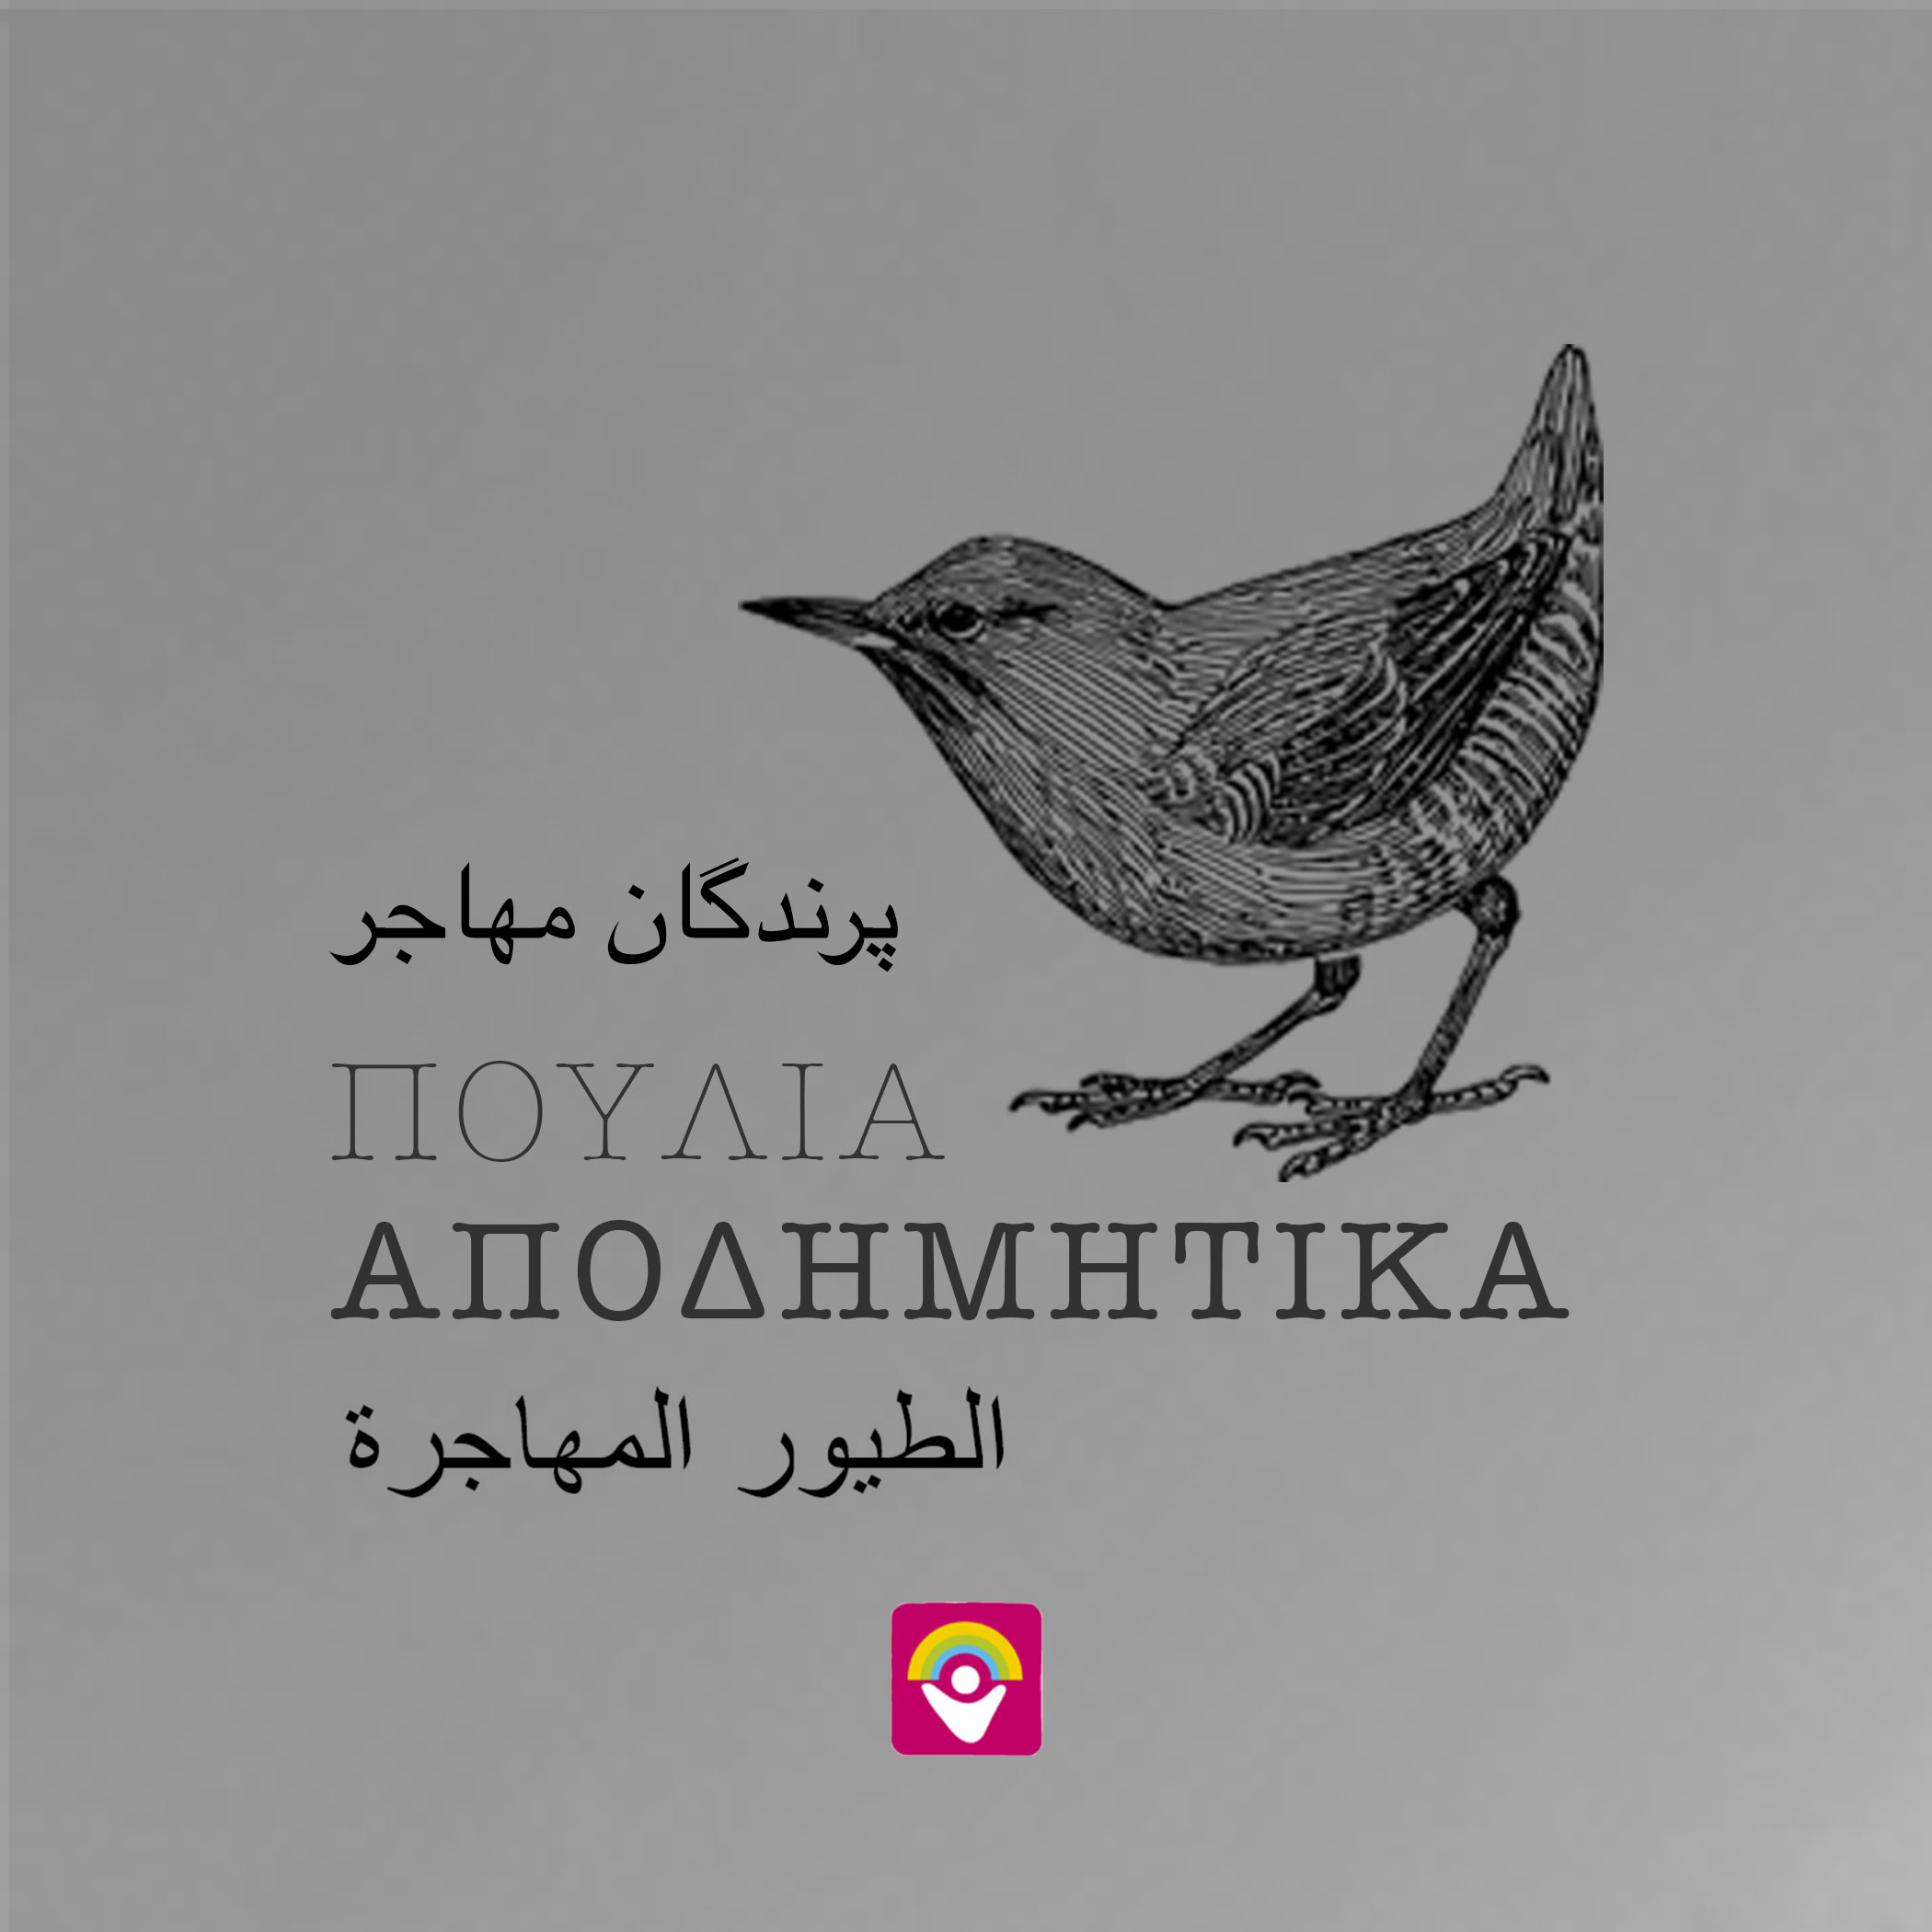 Το 5ο φύλλο της εφημερίδας «Αποδημητικά Πουλιά» στην αγγλική γλώσσα